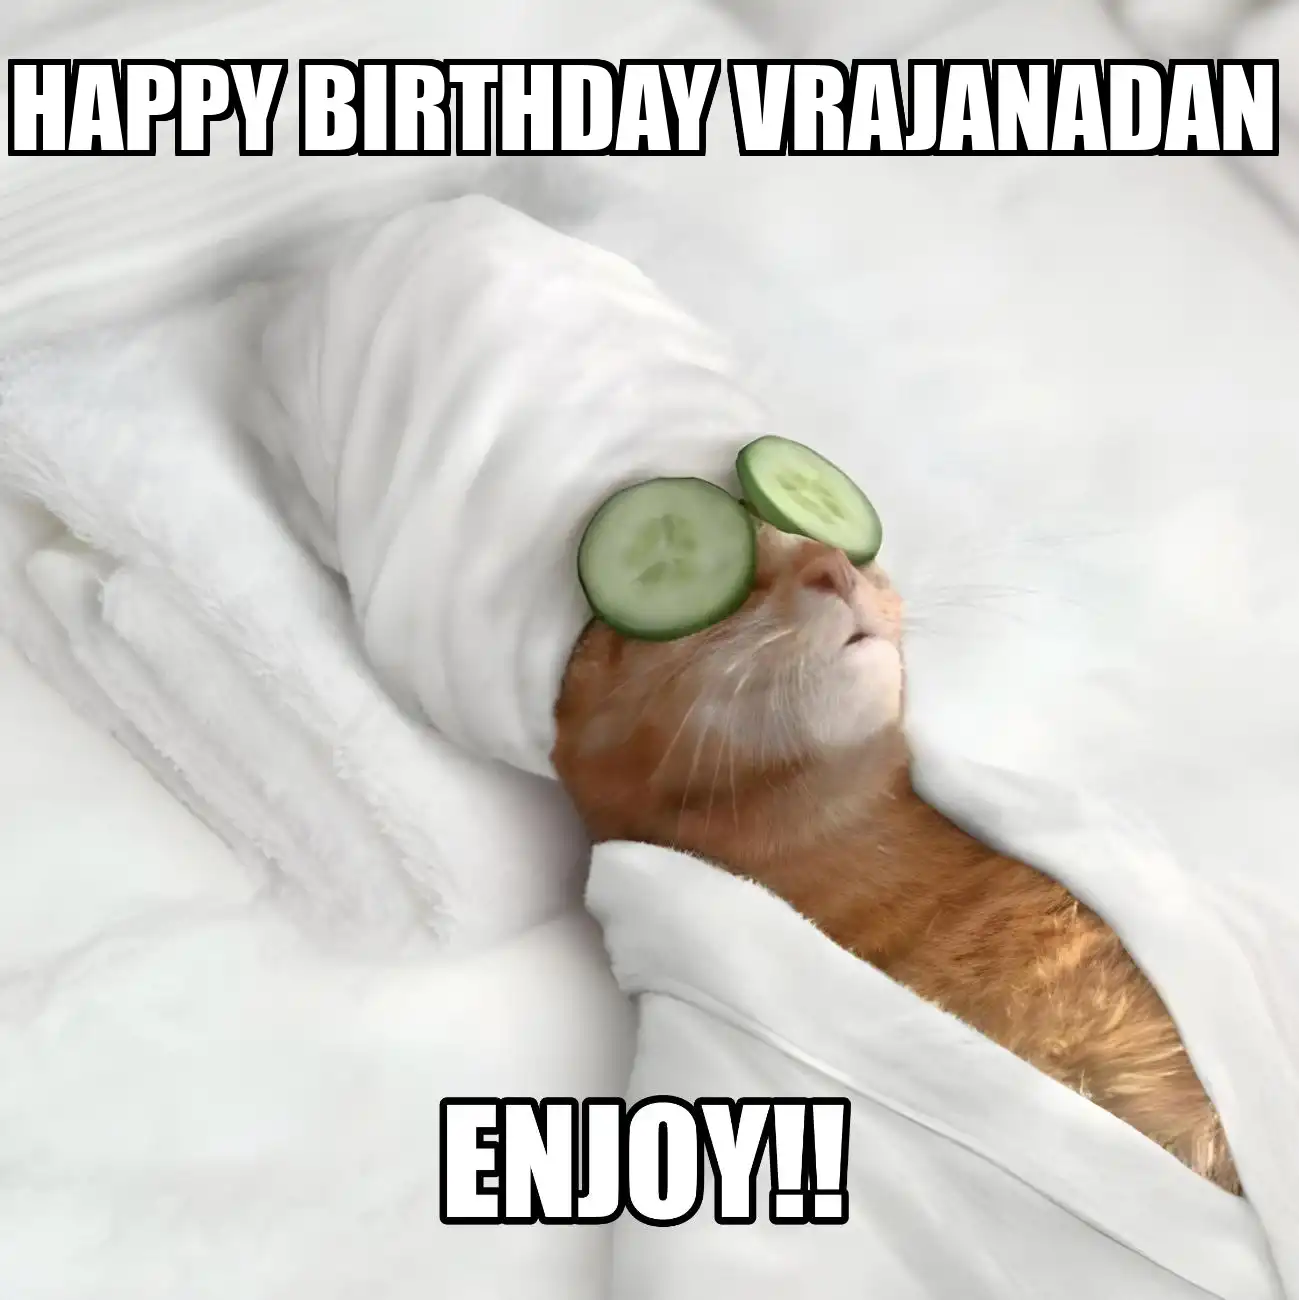 Happy Birthday Vrajanadan Enjoy Cat Meme